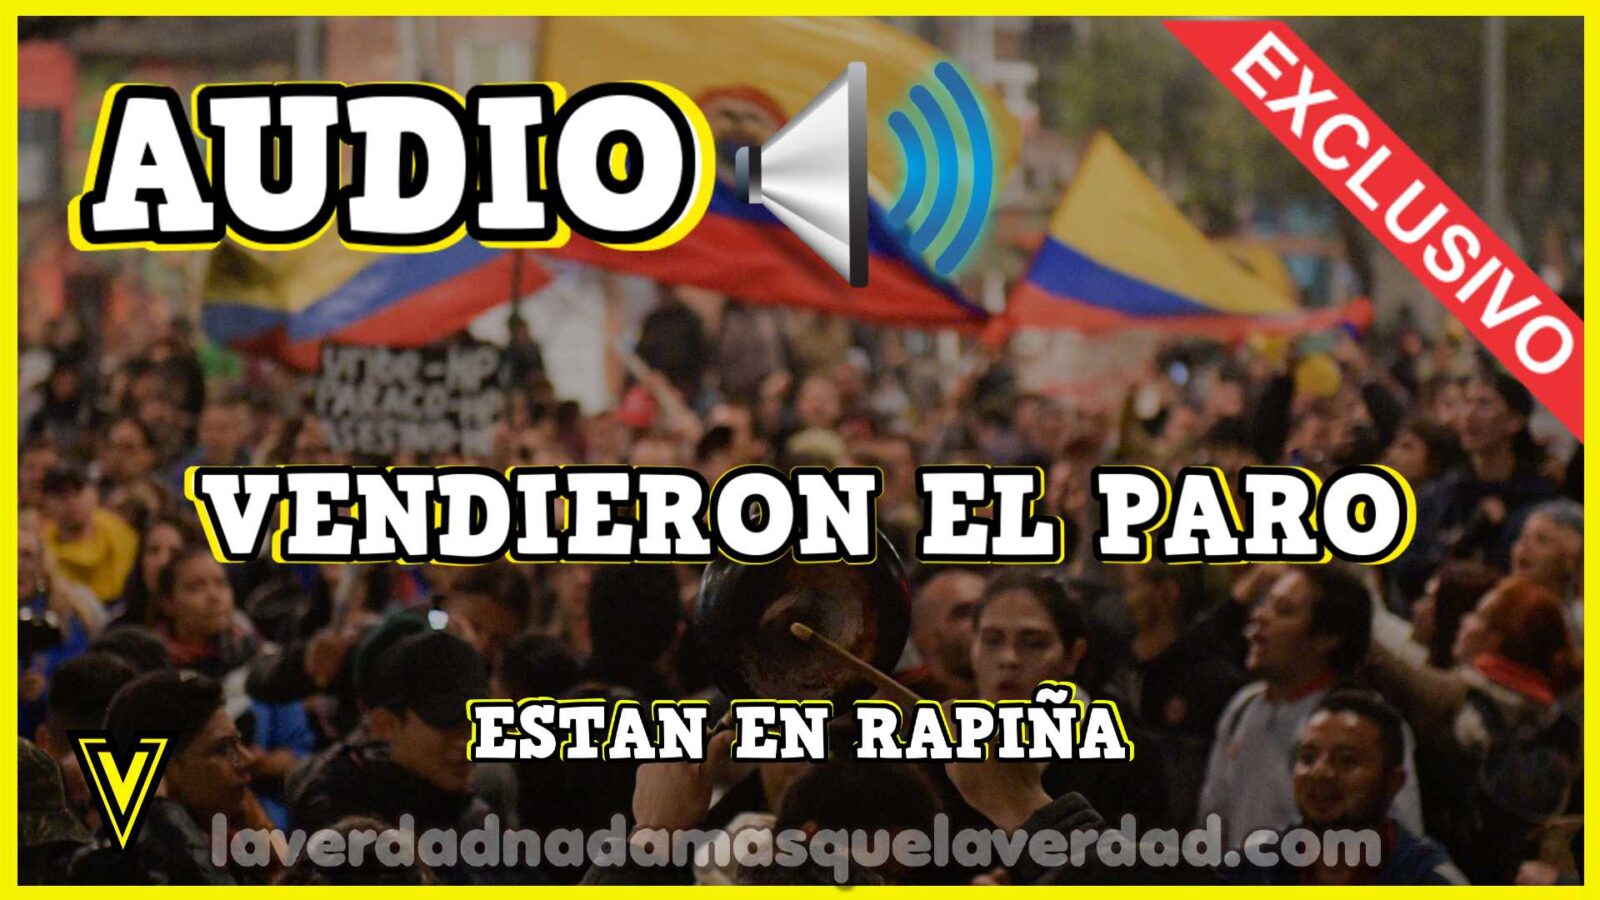 ⭐️ AUDIO EXCLUSIVO DE LA VERDAD VENDIERON ⇨ EL PARO EN COLOMBIA